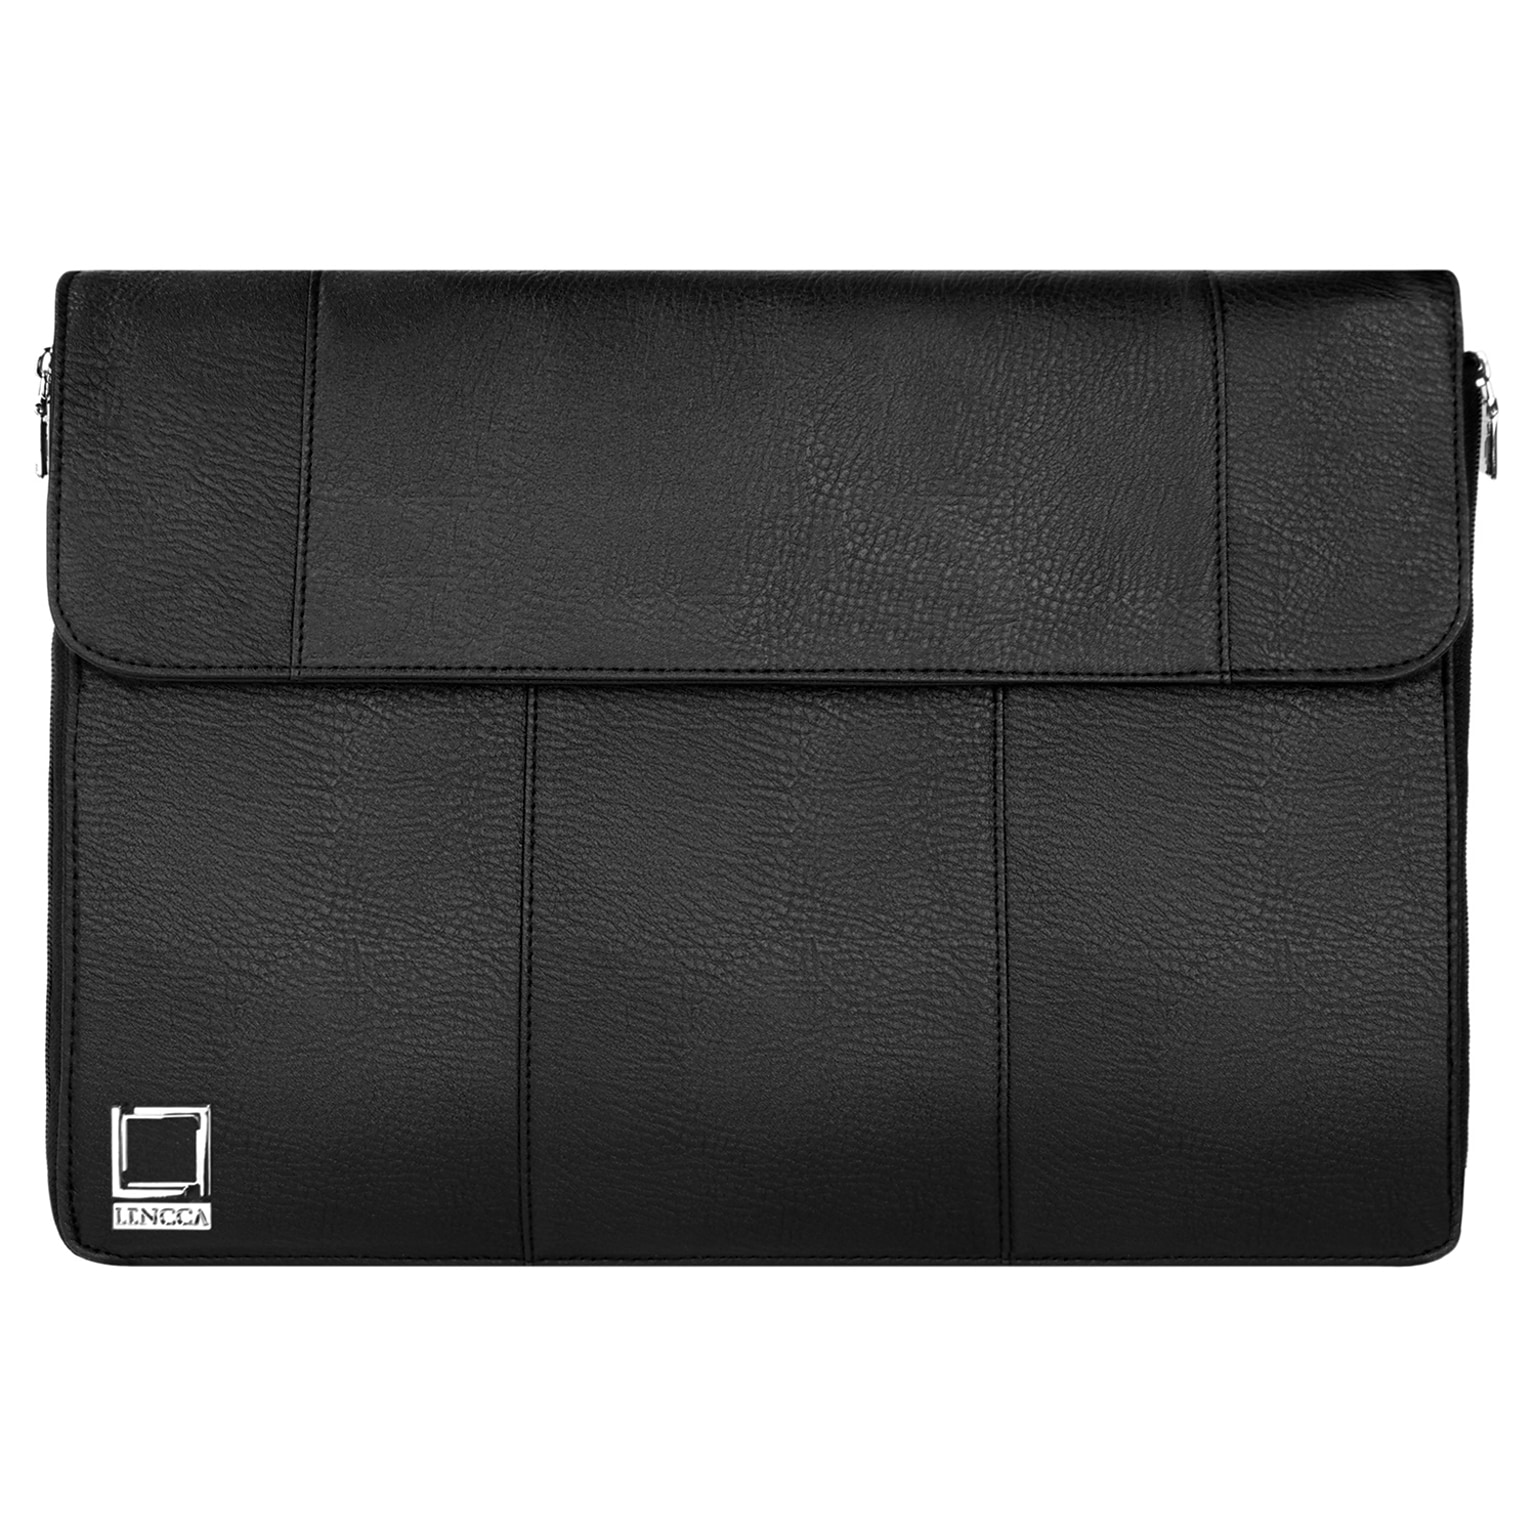 Lencca Axis Black Laptop Crossover Shoulder Bag 15.4 Inch (LENLEA322)